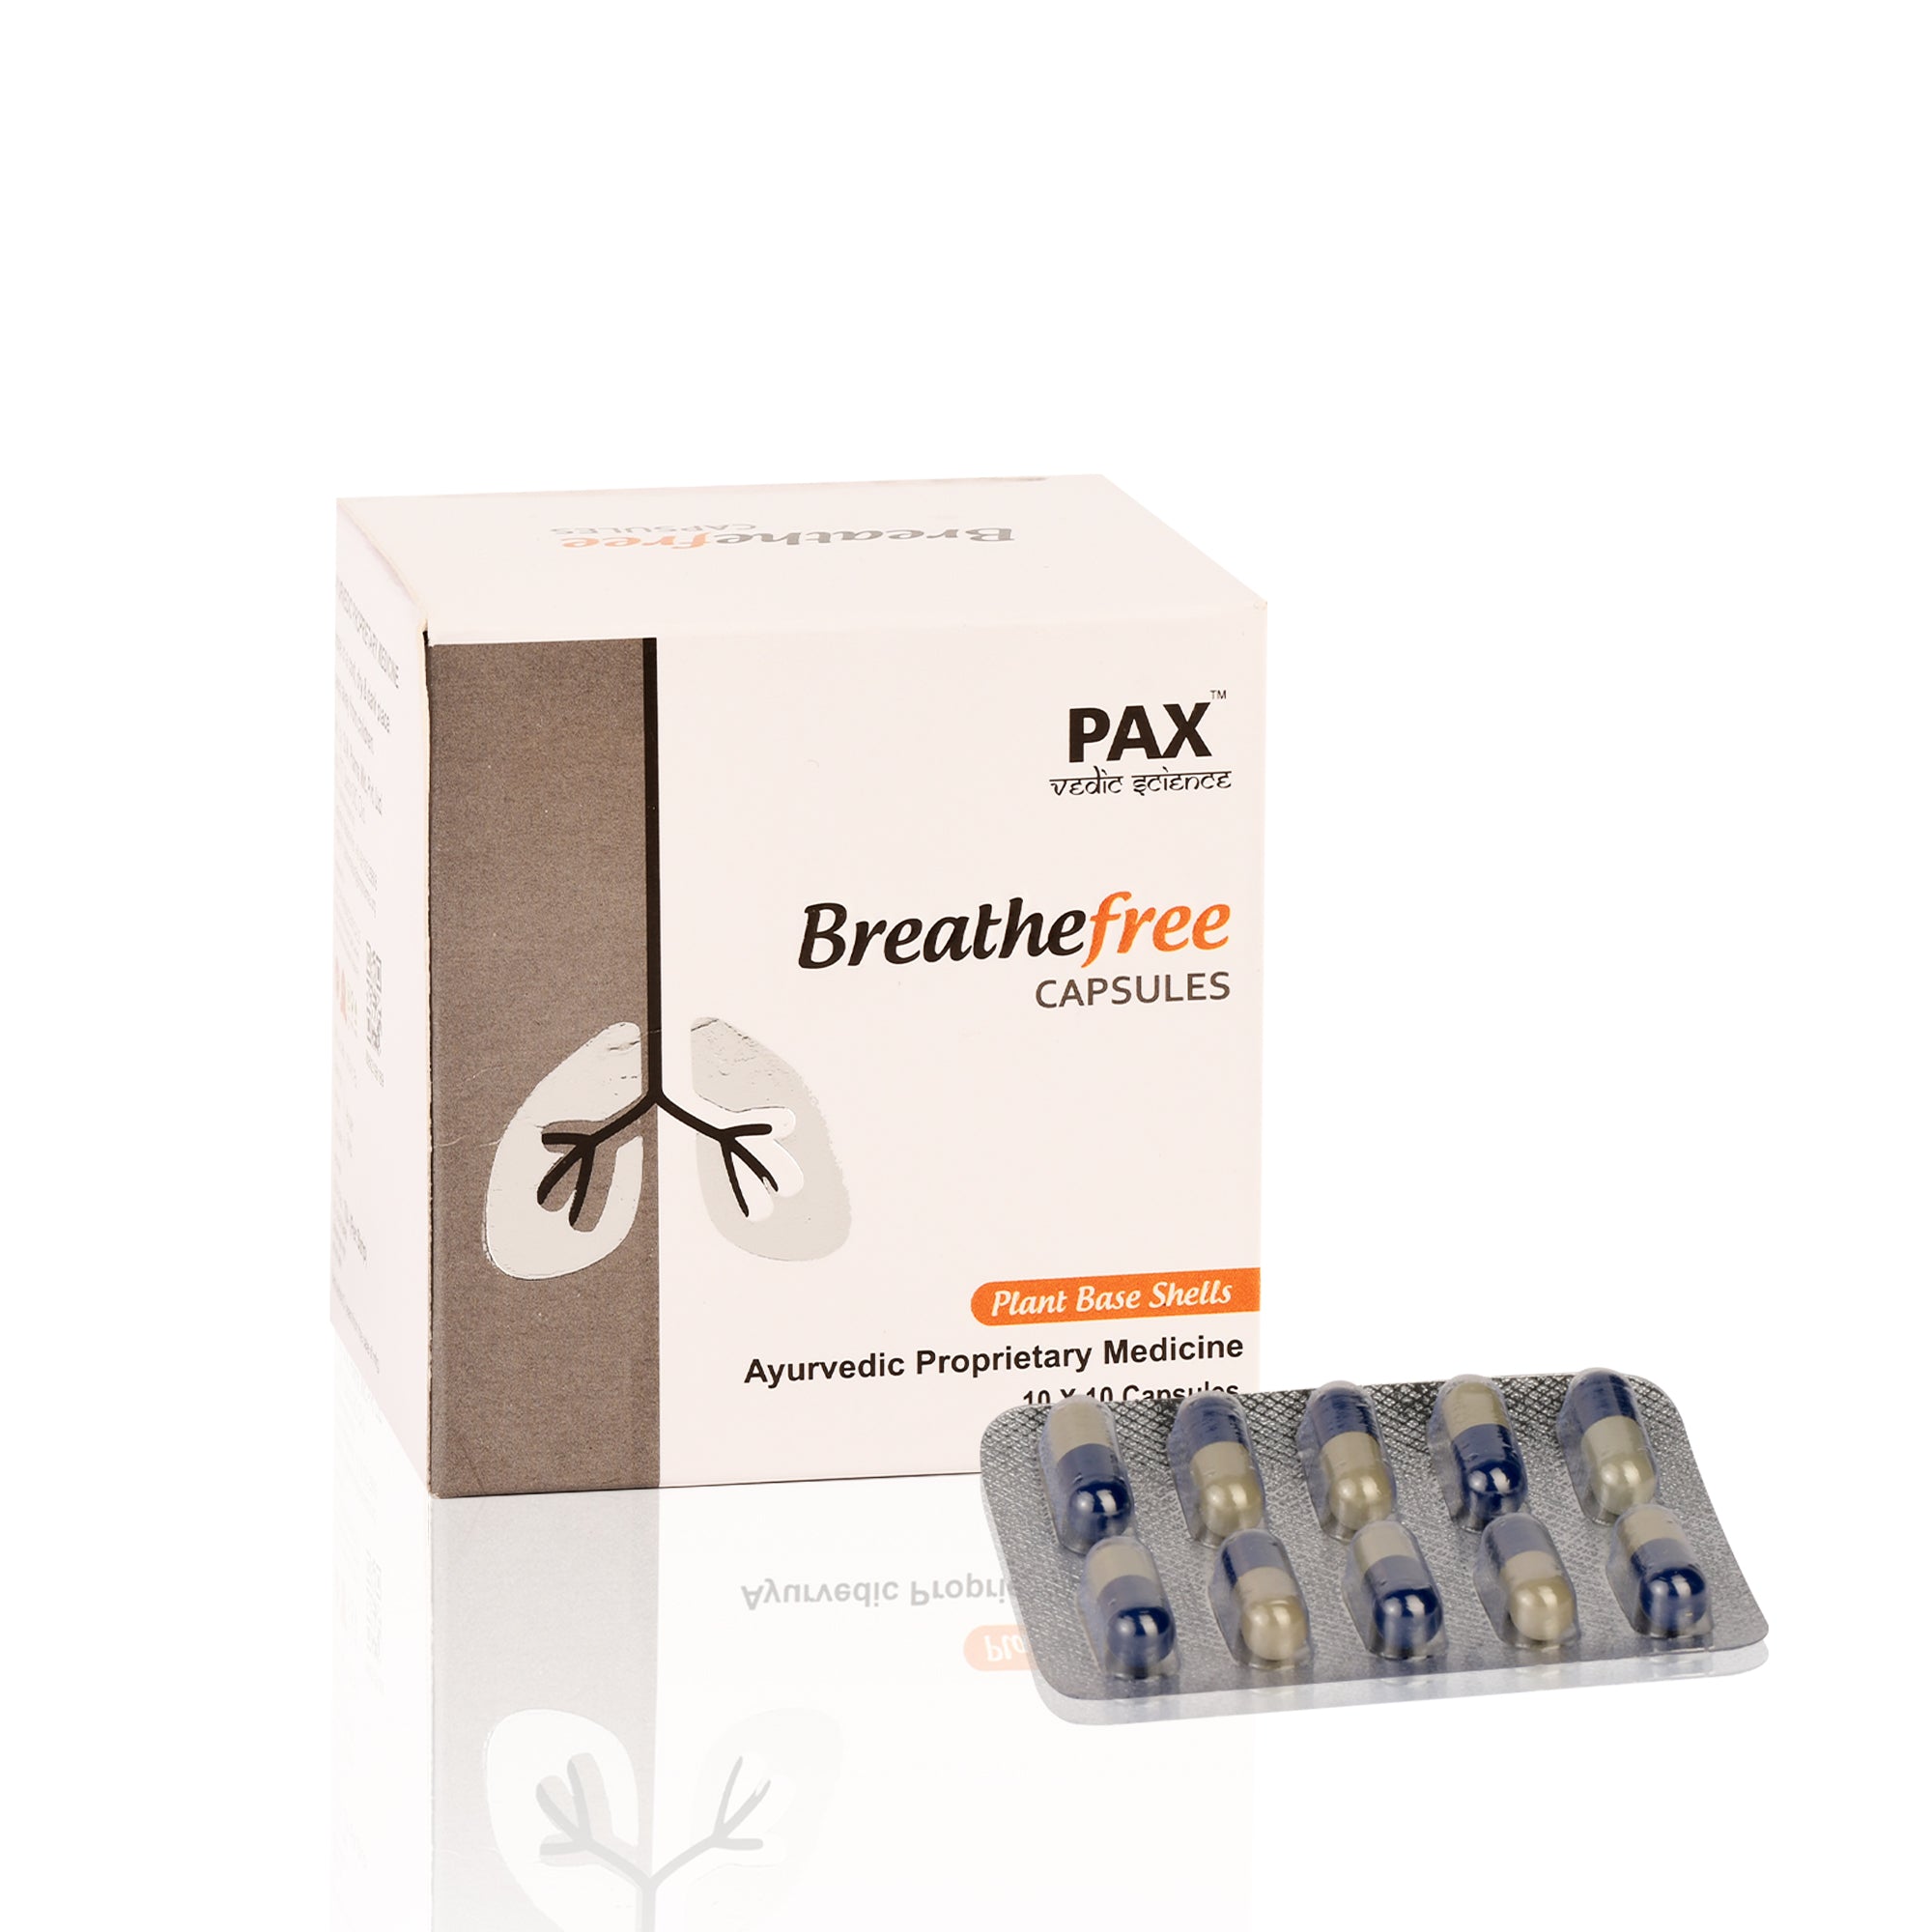 Pax Breathefree Capsules